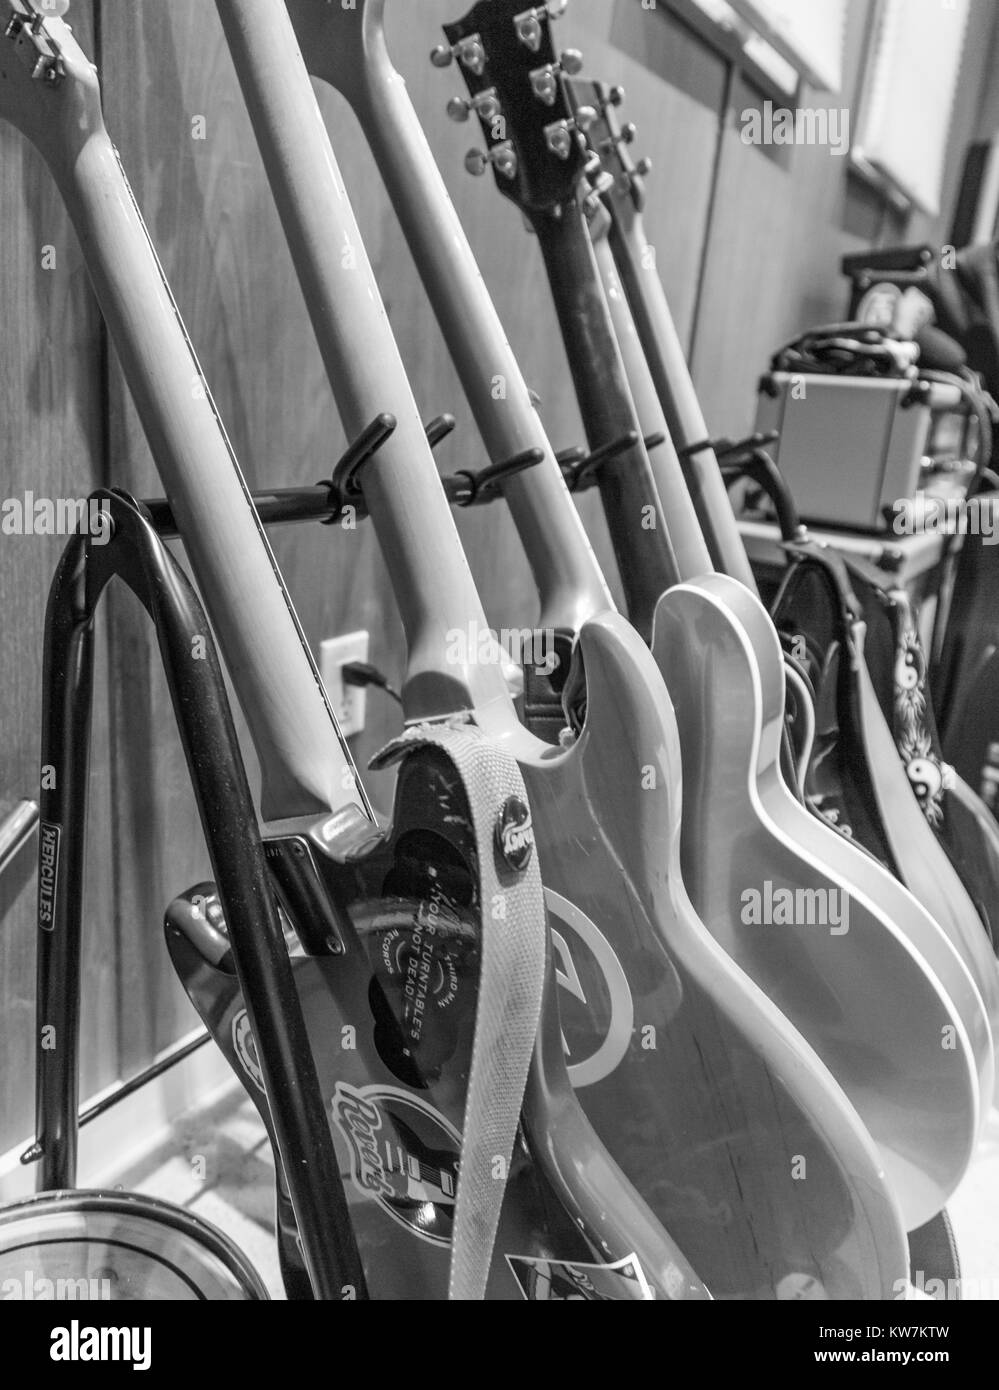 immagine di dettaglio in bianco e nero di un gruppo di chitarre elettriche Foto Stock